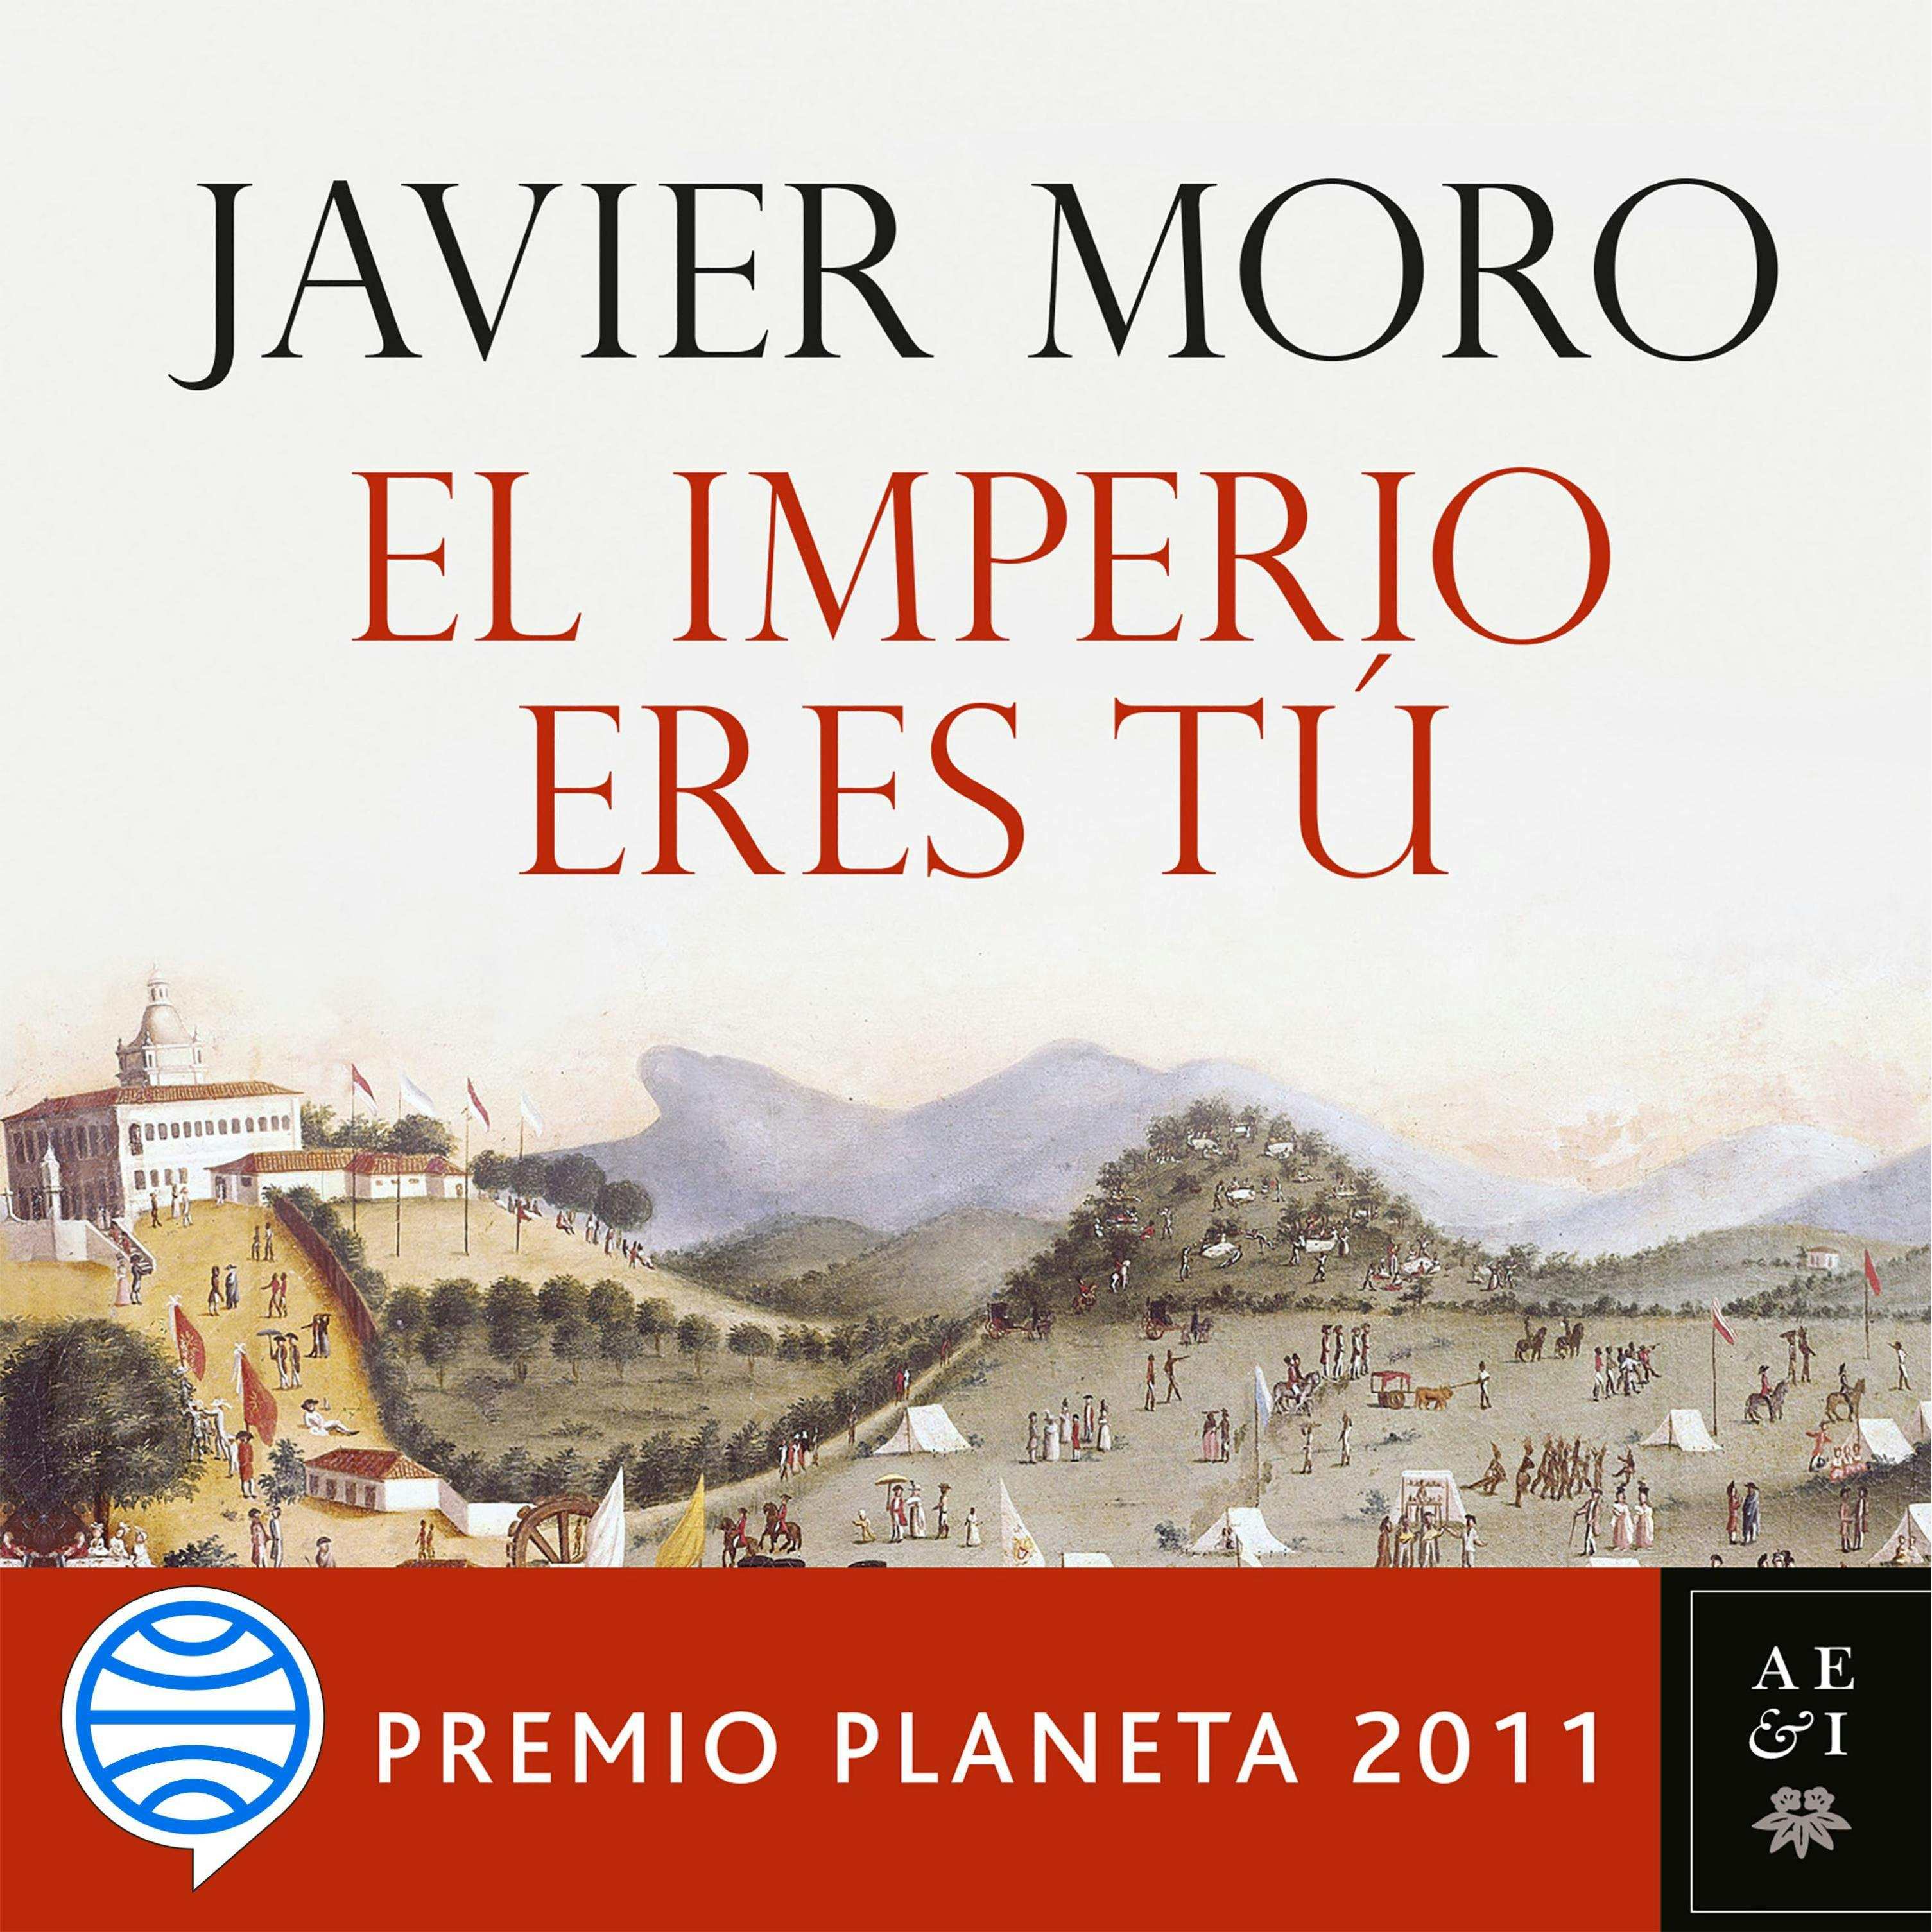 El Imperio eres tú: Premio Planeta 2011 - undefined